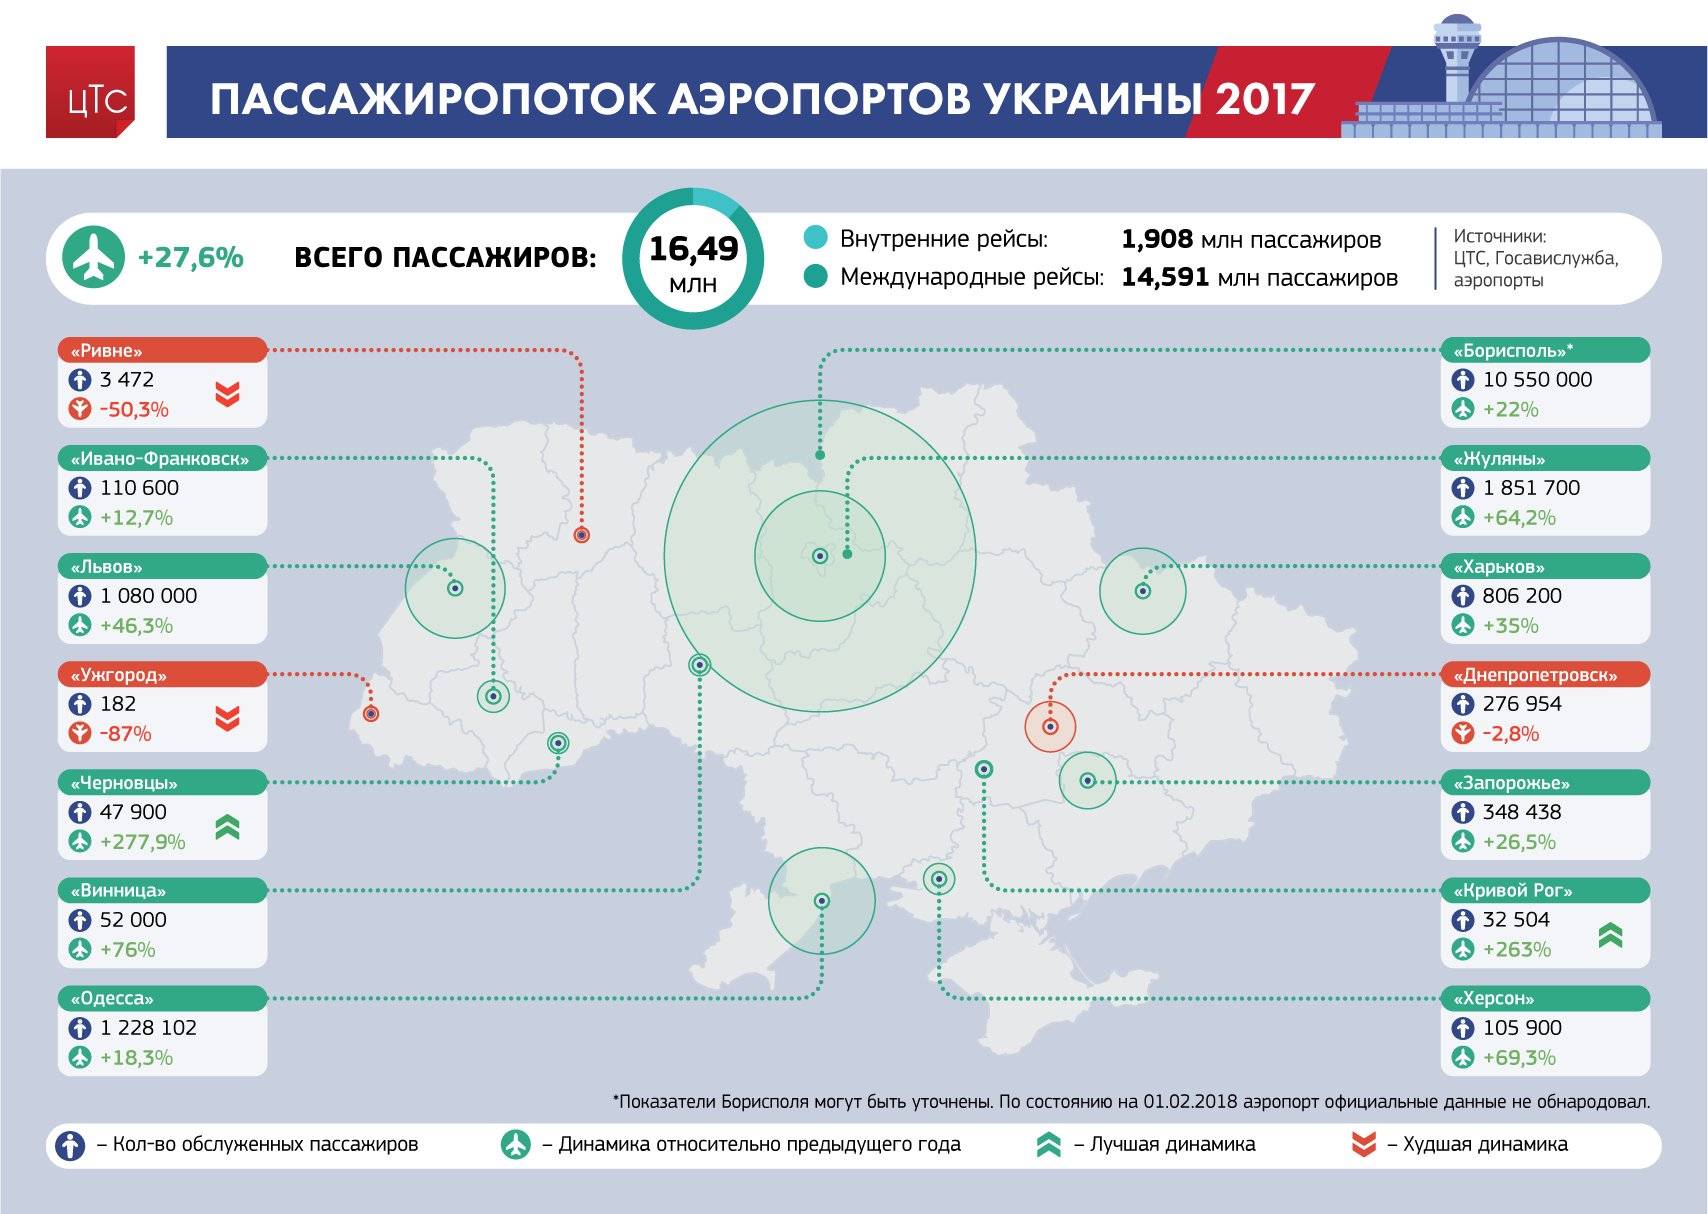 Аэропорты украины список — все карты мира